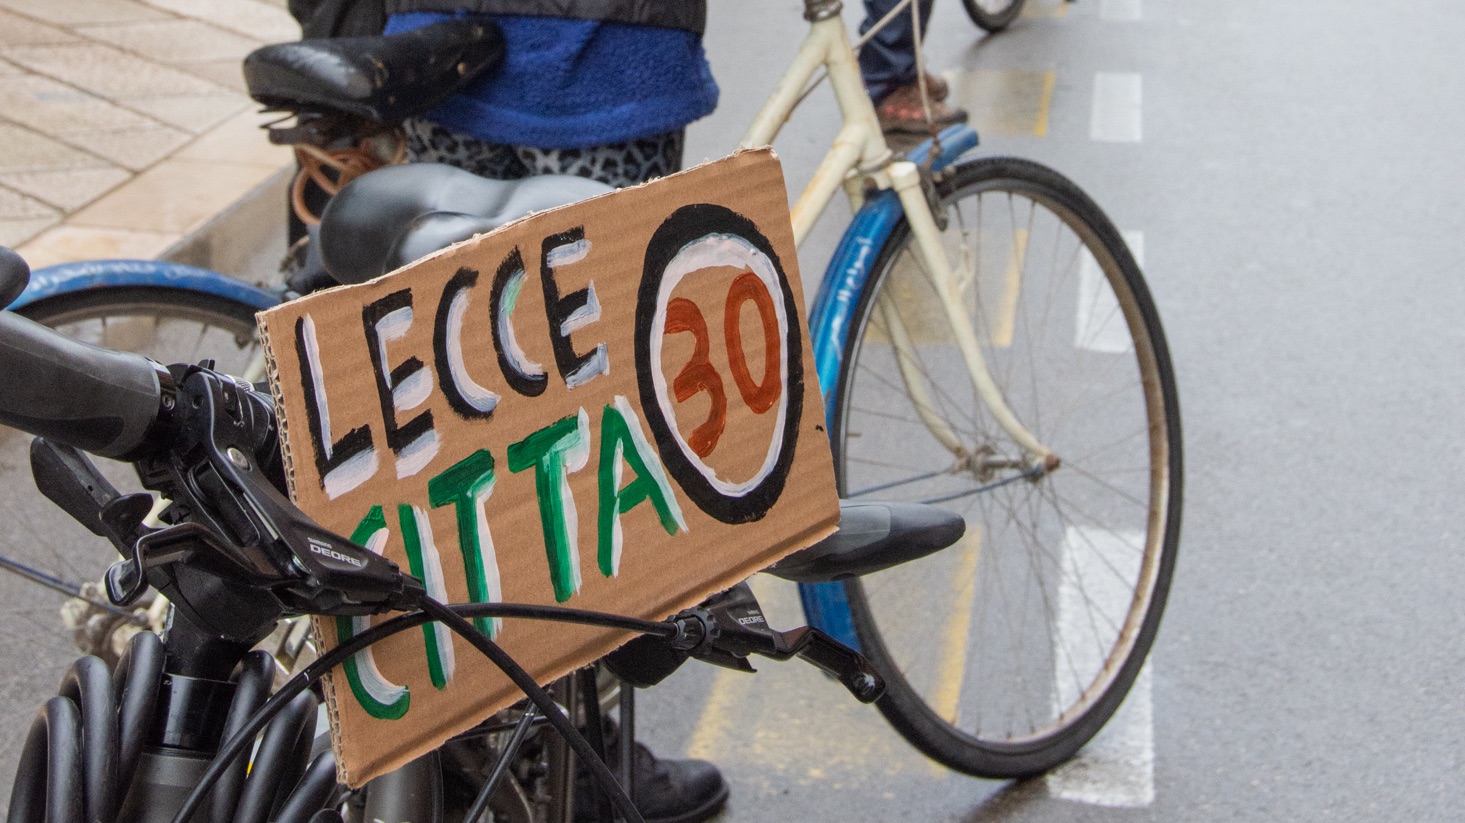 Sicurezza stradale: Lecce30, da oggi la raccolta di firme per la petizione popolare In dieci anni 40 morti e 4178 feriti